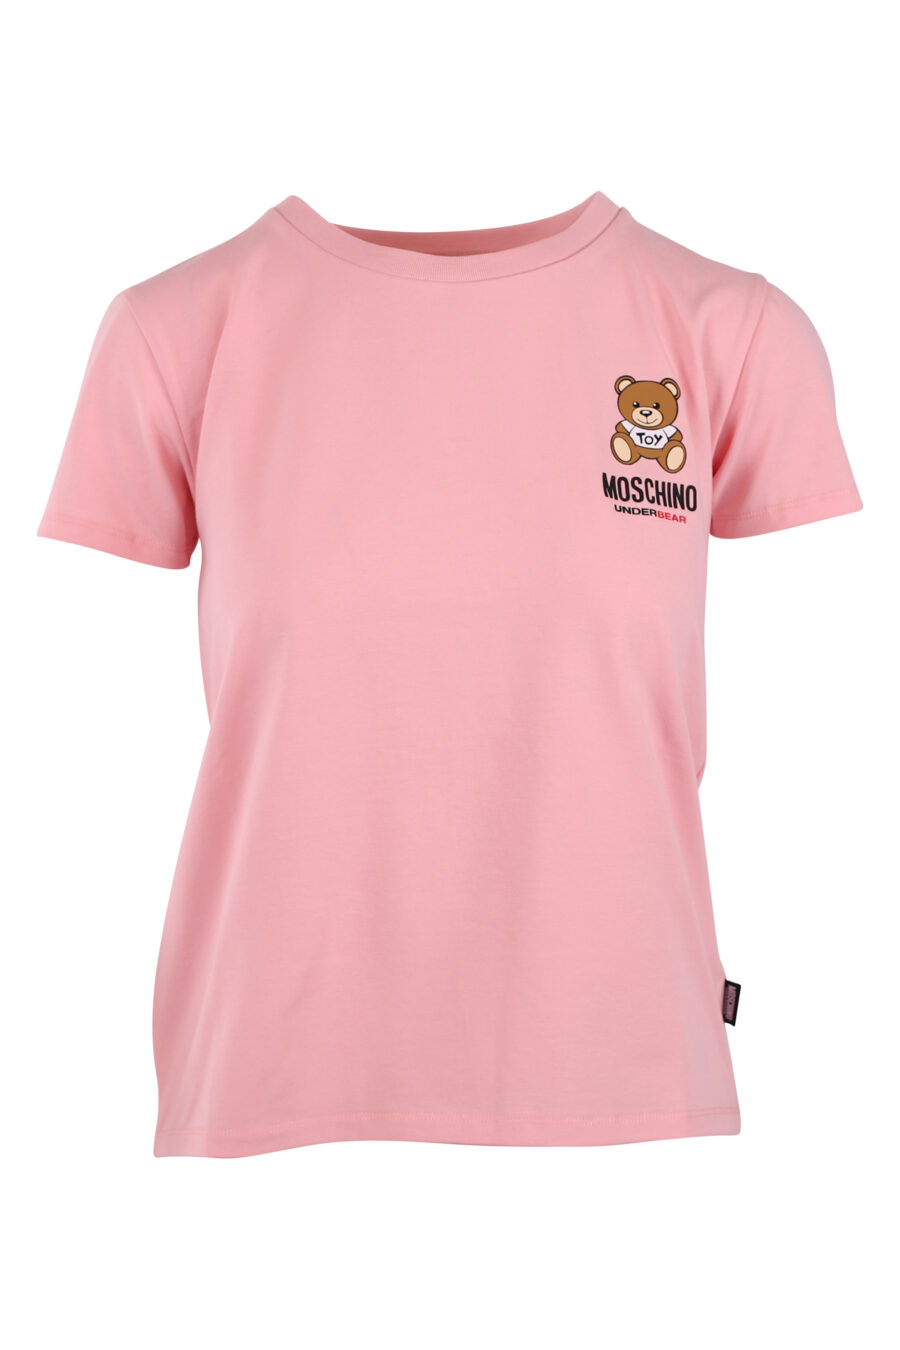 T-shirt cor-de-rosa com o logótipo de um pequeno urso - IMG 6243